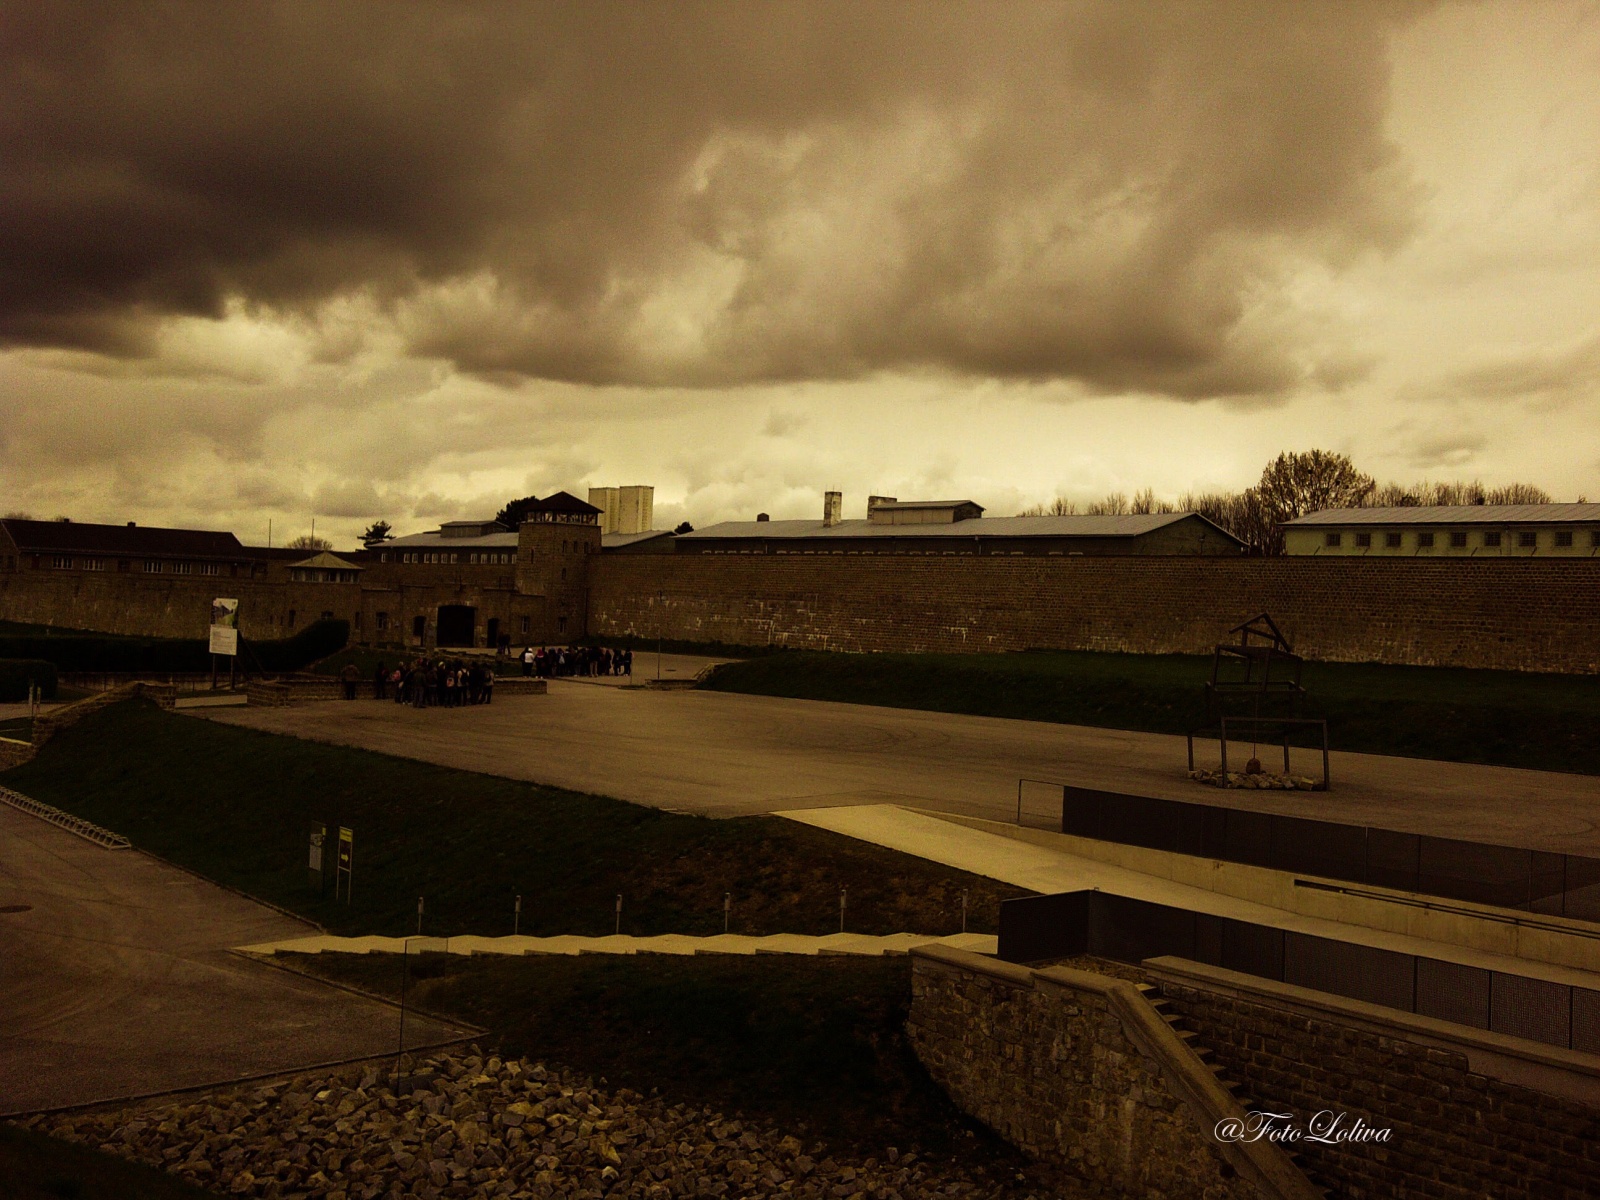 MAUTHAUSEN - IL CAMPO - Il campo di concentramento di Mauthausen, denominato campo di concentramento di Mauthausen-Gusen dall'estate del 1940, era un lager nazista, una fortezza in pietra eretta nel 1938 in cima a una collina sovrastante la piccola cittadina di Mauthausen, nell'allora Gau Oberdonau, ora Alta Austria, situata a circa venticinque chilometri a est di Linz.
Mauthausen, costruito con il granito della sottostante cava, era una estesa fortezza di pietra in uno stile vagamente orientale, tanto che l'ingresso principale al lager era chiamato dai prigionieri "La Porta mongola". La fortezza, di pianta rettangolare, era chiusa su tre lati da mura di pietra spesse due metri e alte fino a otto. Il lato del lager che non si riuscì a finire fu chiuso da un reticolato di filo spinato percorso da corrente elettrica ad alta tensione, luogo di numerosi suicidi.
Considerato impropriamente come semplice campo di lavoro, fu di fatto, fra tutti i campi nazisti, «il solo campo di concentramento classificato di "classe 3" (come campo di punizione e di annientamento attraverso il lavoro)». Vi si attuò lo sterminio soprattutto attraverso il lavoro forzato nella vicina cava di granito e la consunzione per denutrizione e stenti, pur essendo presenti anche alcune piccole camere a gas.